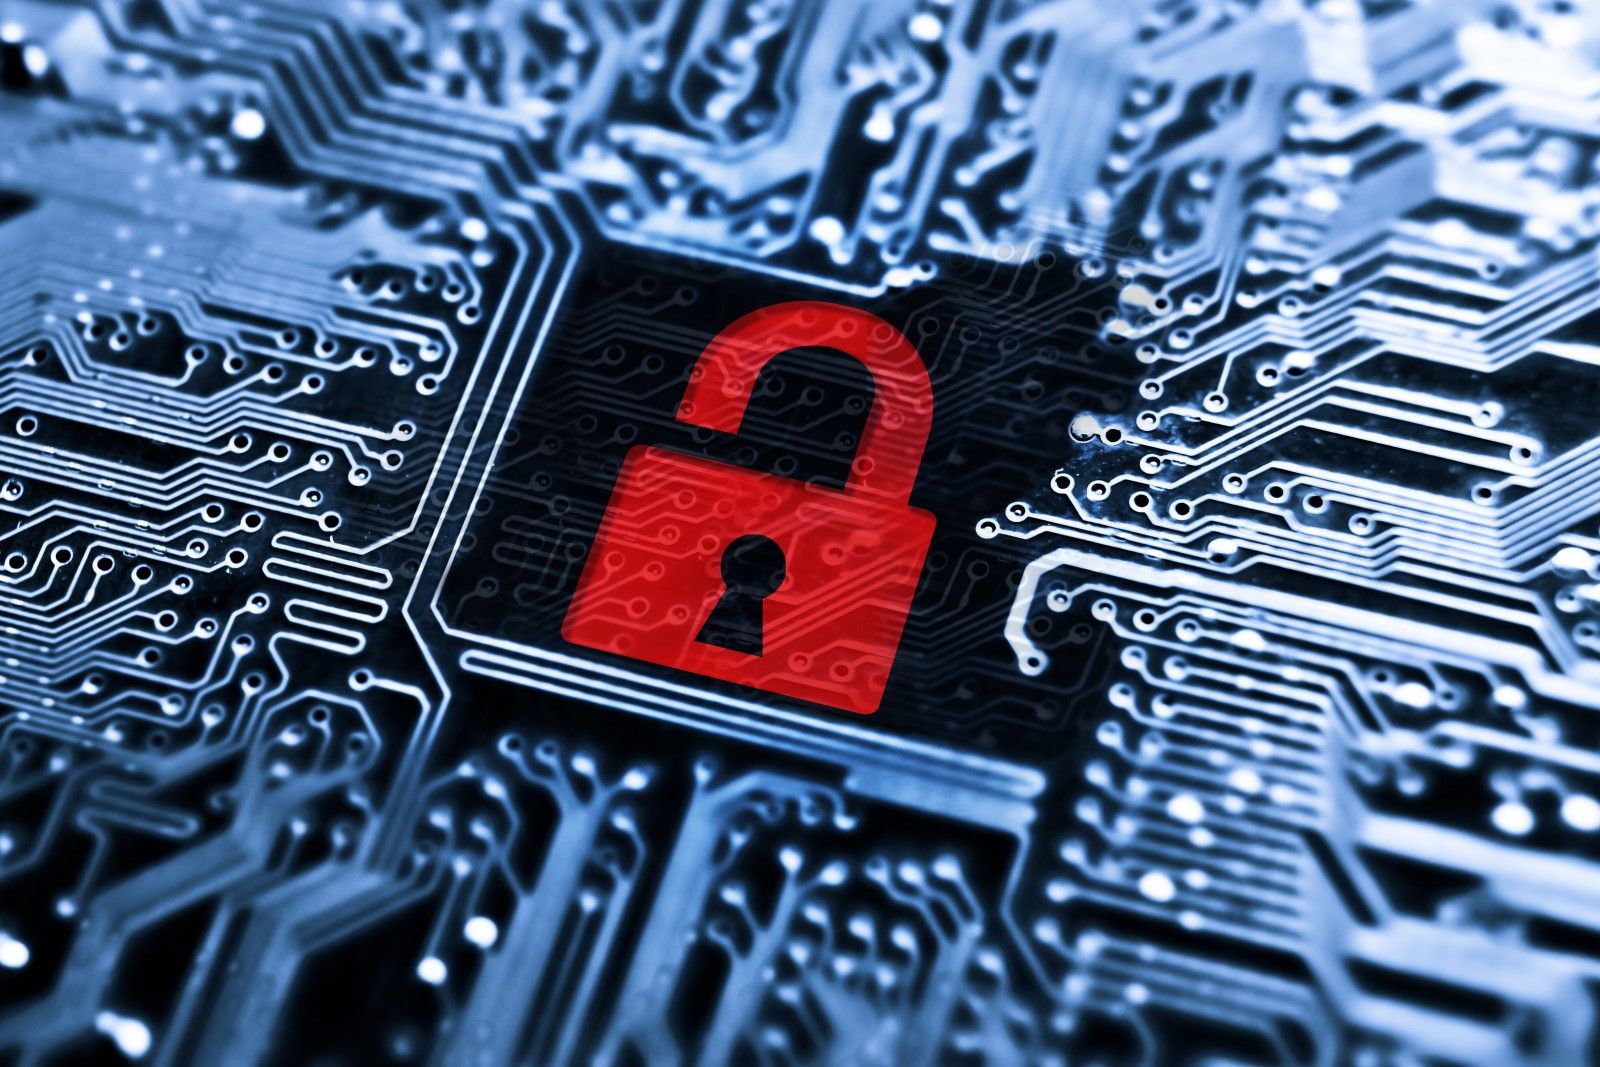 An ninh mạng là điều tối cần thiết đối với sàn giao dịch tiền mã hóa